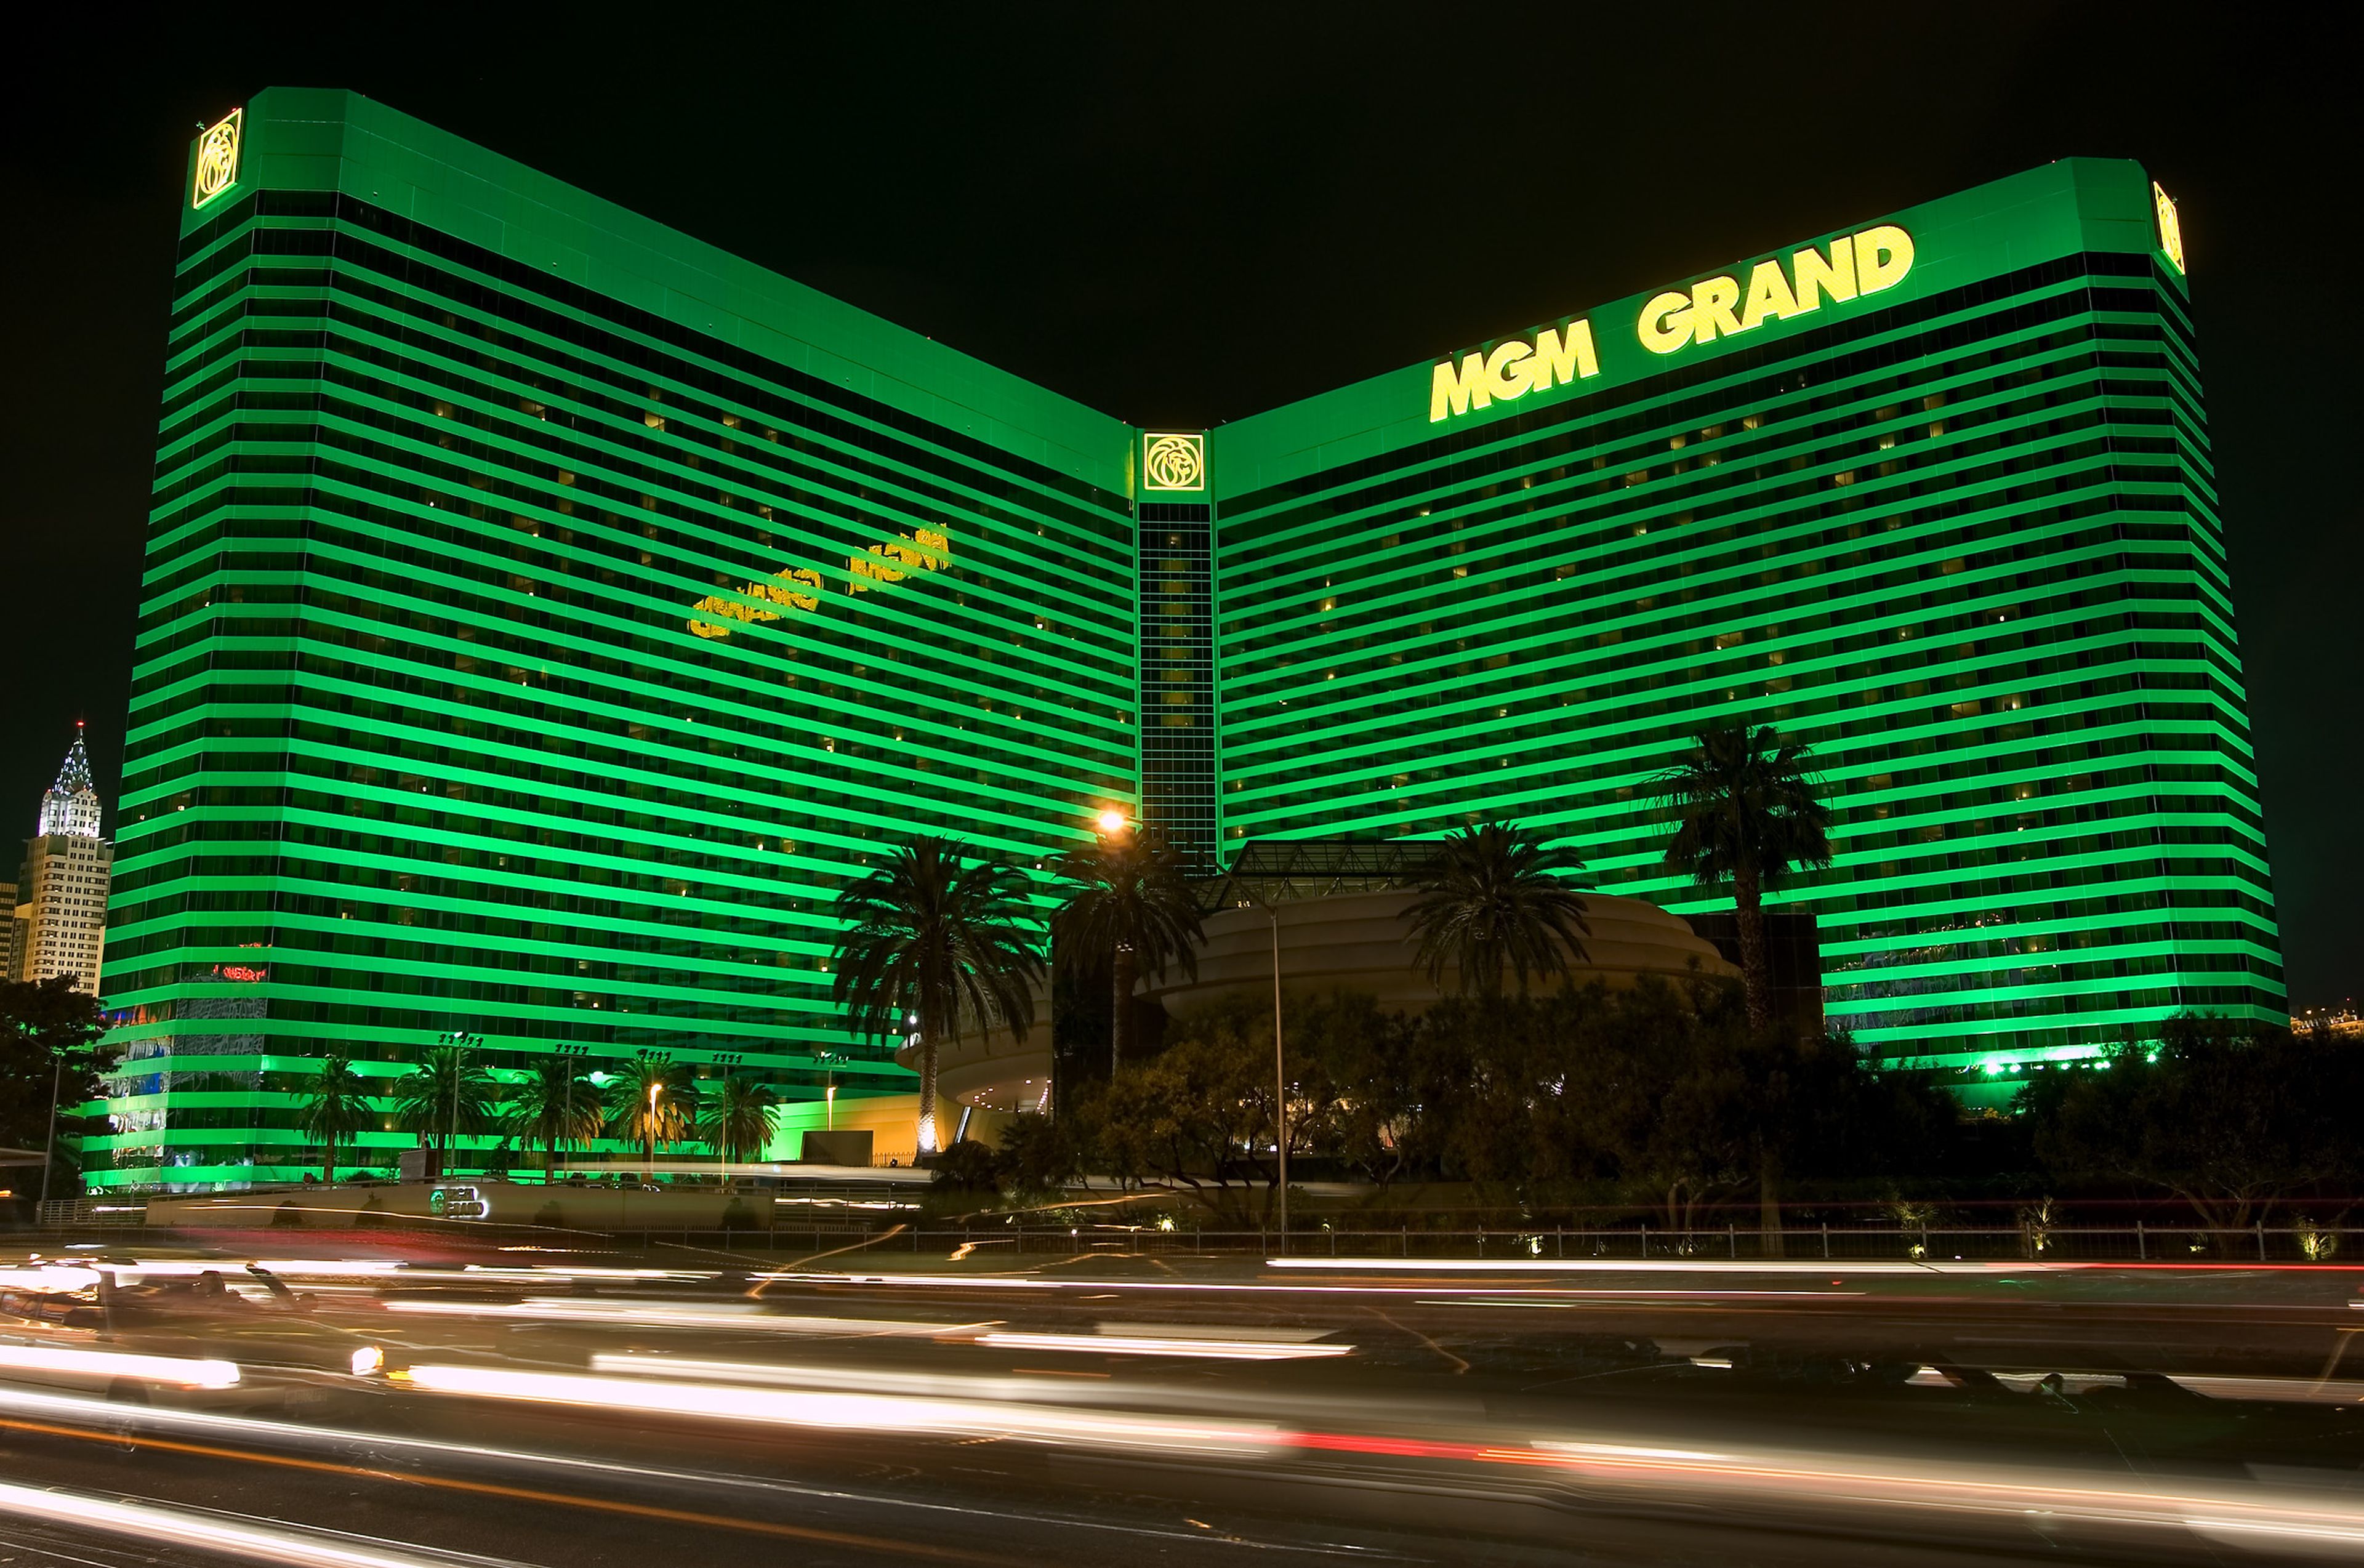 El MGM Grand de Las Vegas, con casi 7.000 habitaciones, es uno de los hotel-casino más reconocido de la cadena.